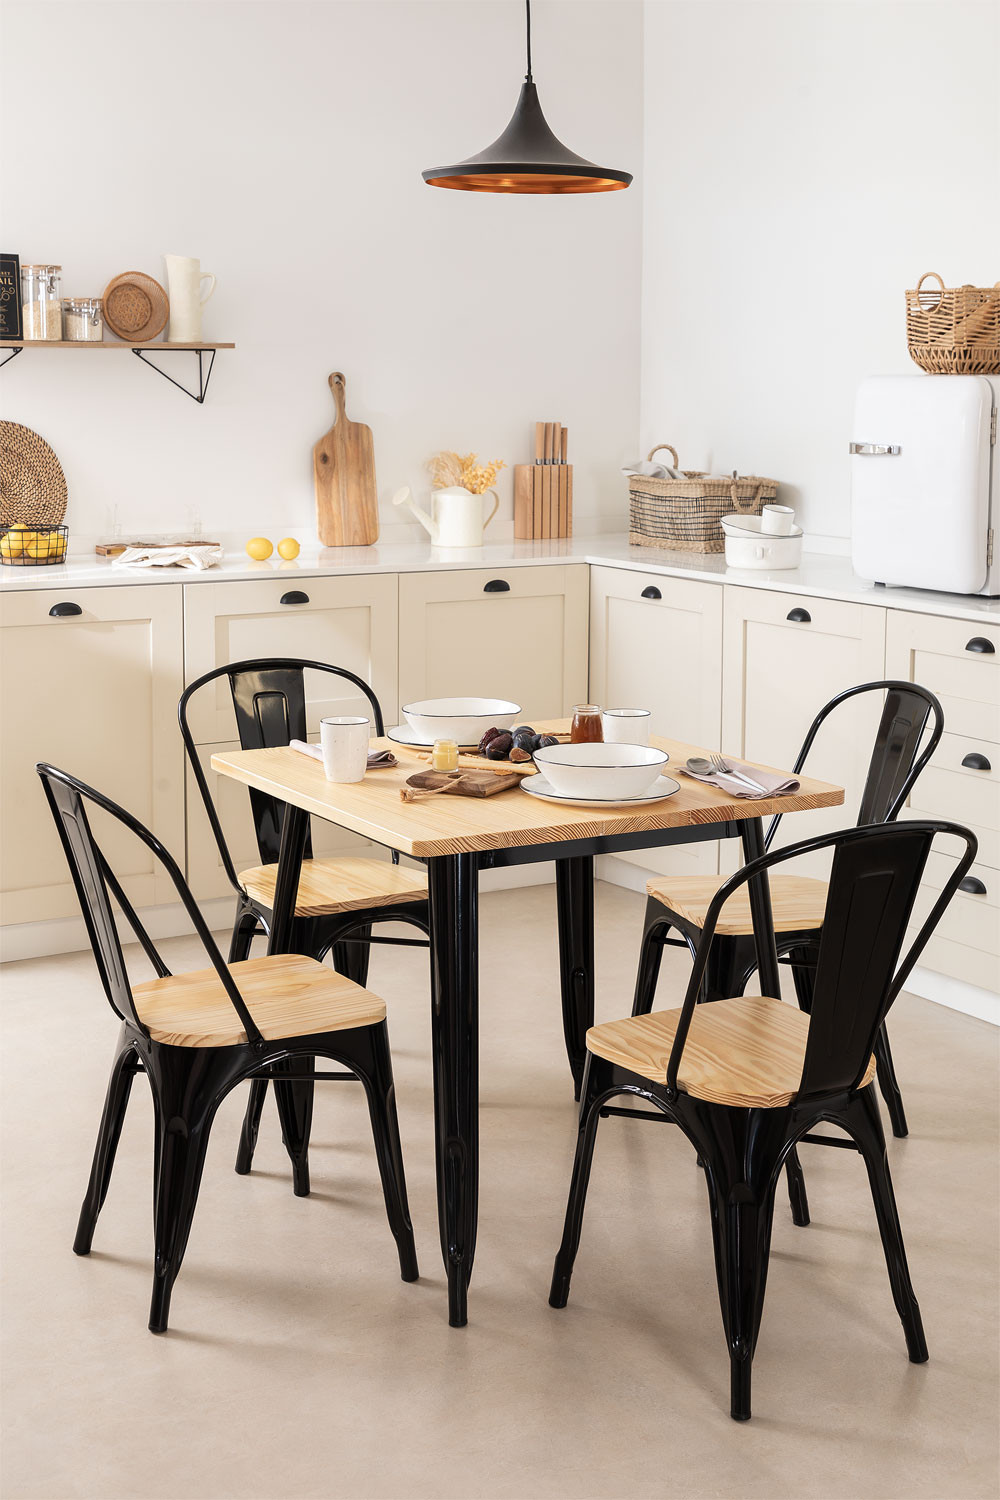 Tables et chaises en bois : donnez du style à votre salle à manger